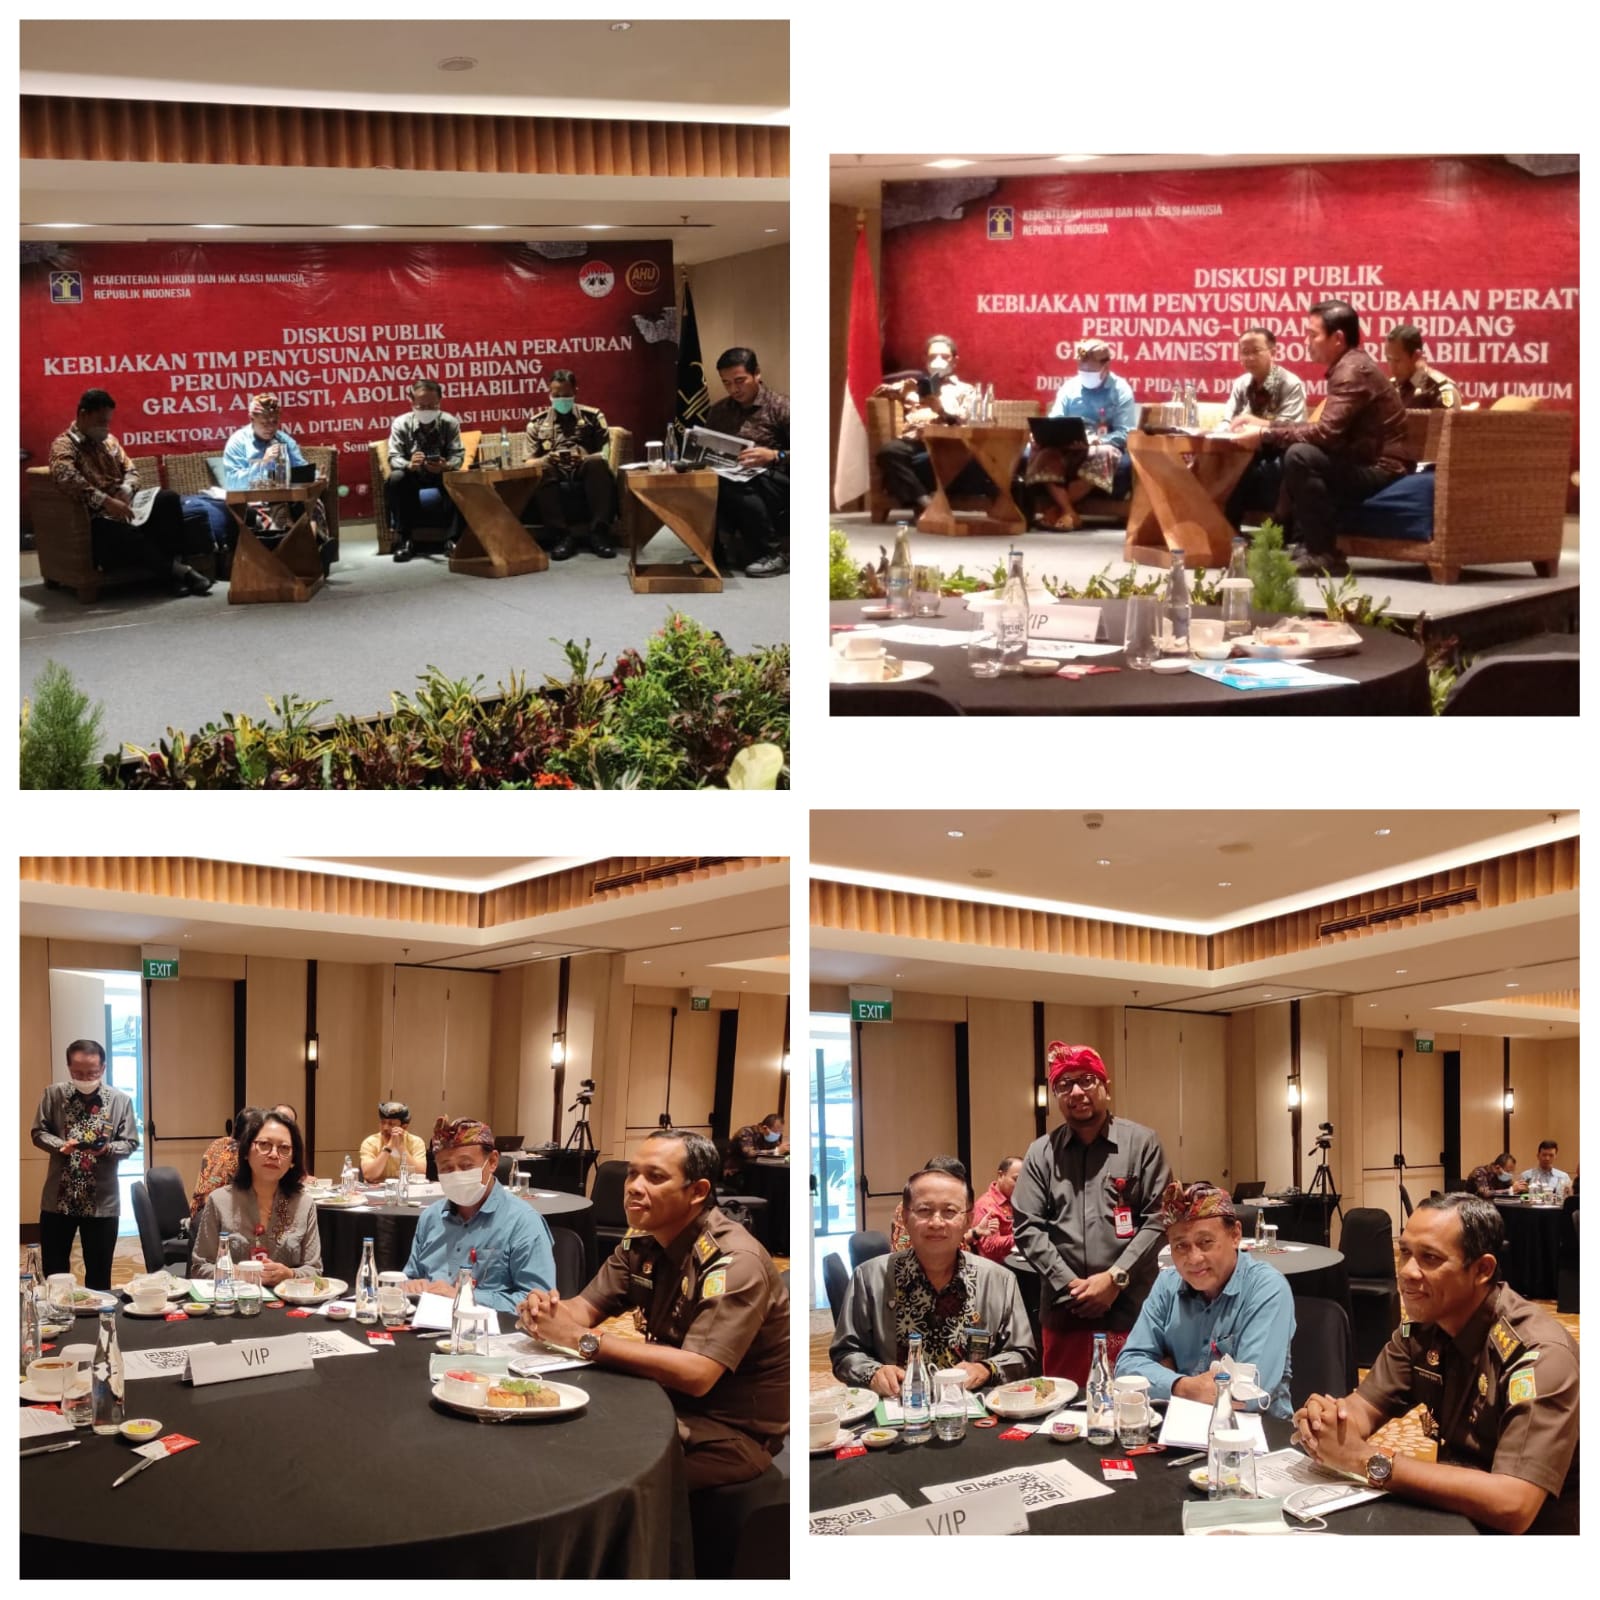 Dekan Fakultas Hukum UNUD Menjadi Narasumber Diskusi Publik yang Diselenggarakan oleh Direktor Jenderal Administrasi Hukum Umum Kementrian Hukum dan Hak Asasi Manusia Republik Indonesia